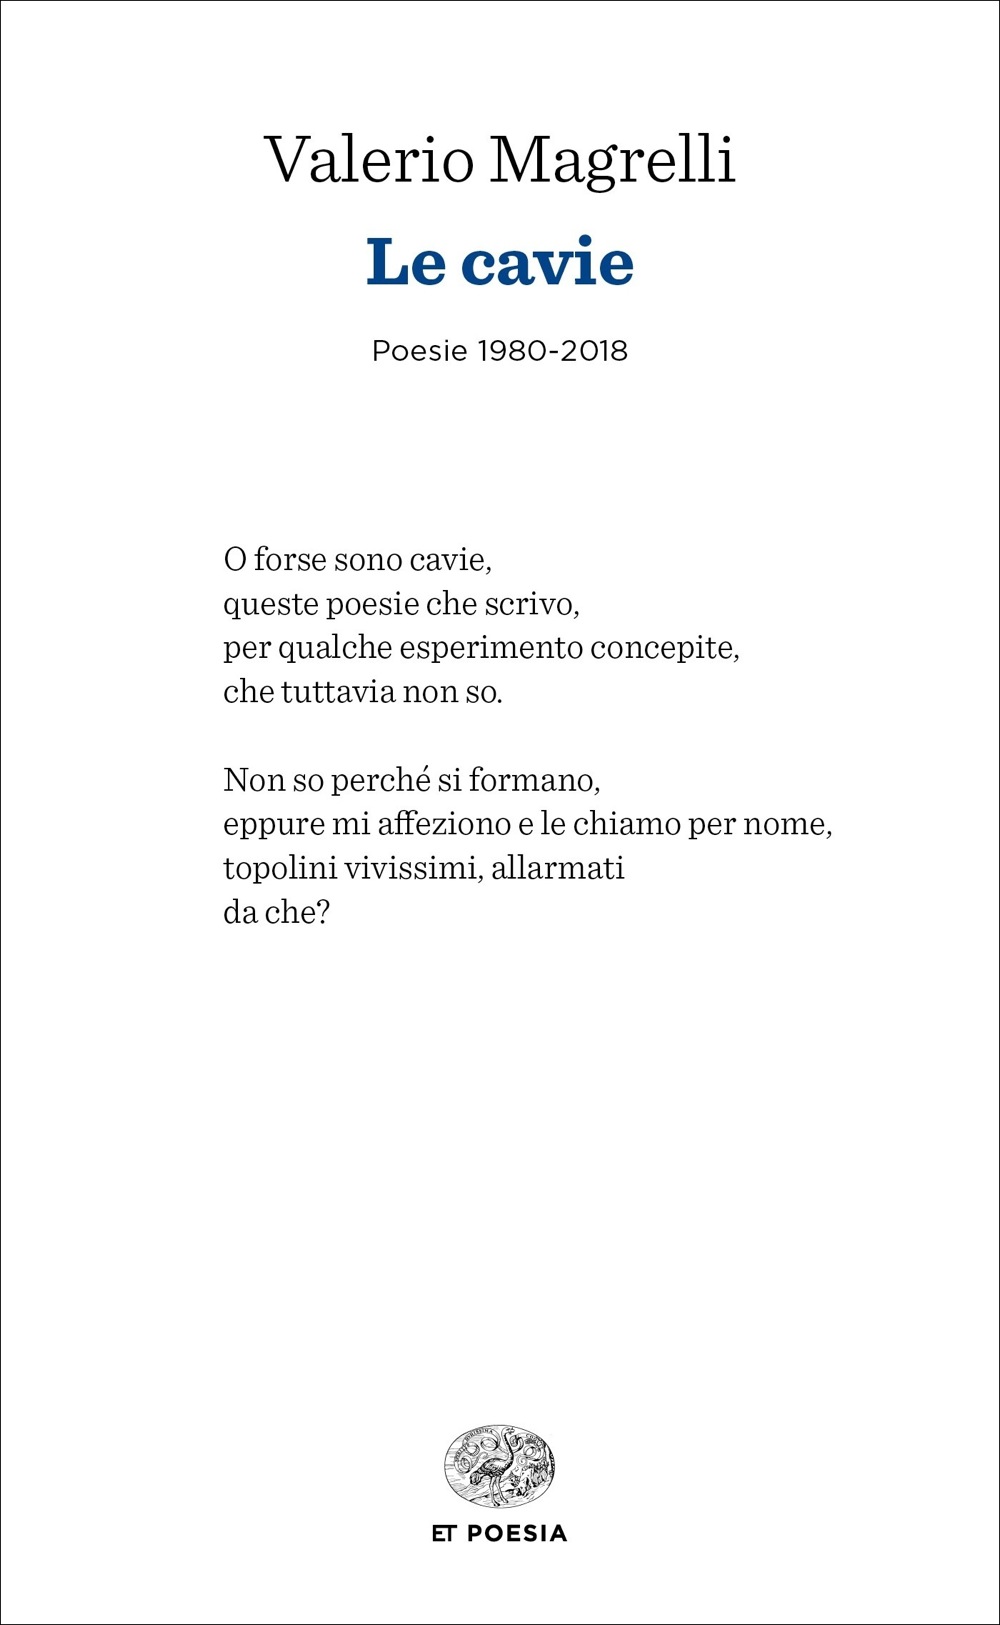 Le cavie, Valerio Magrelli. Giulio Einaudi Editore - ET Poesia